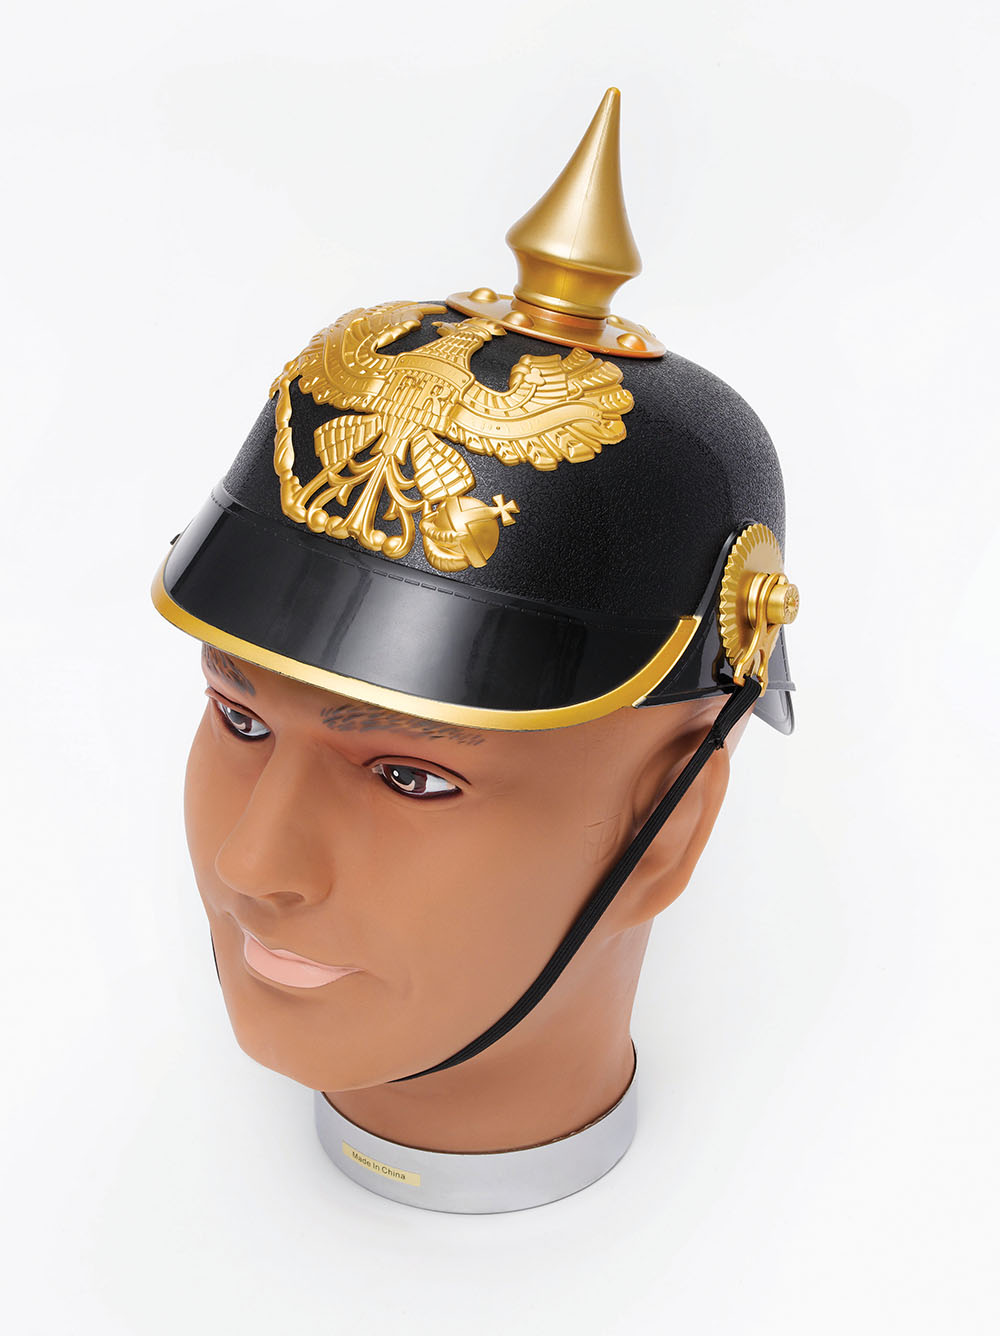 Kaiser Helmet